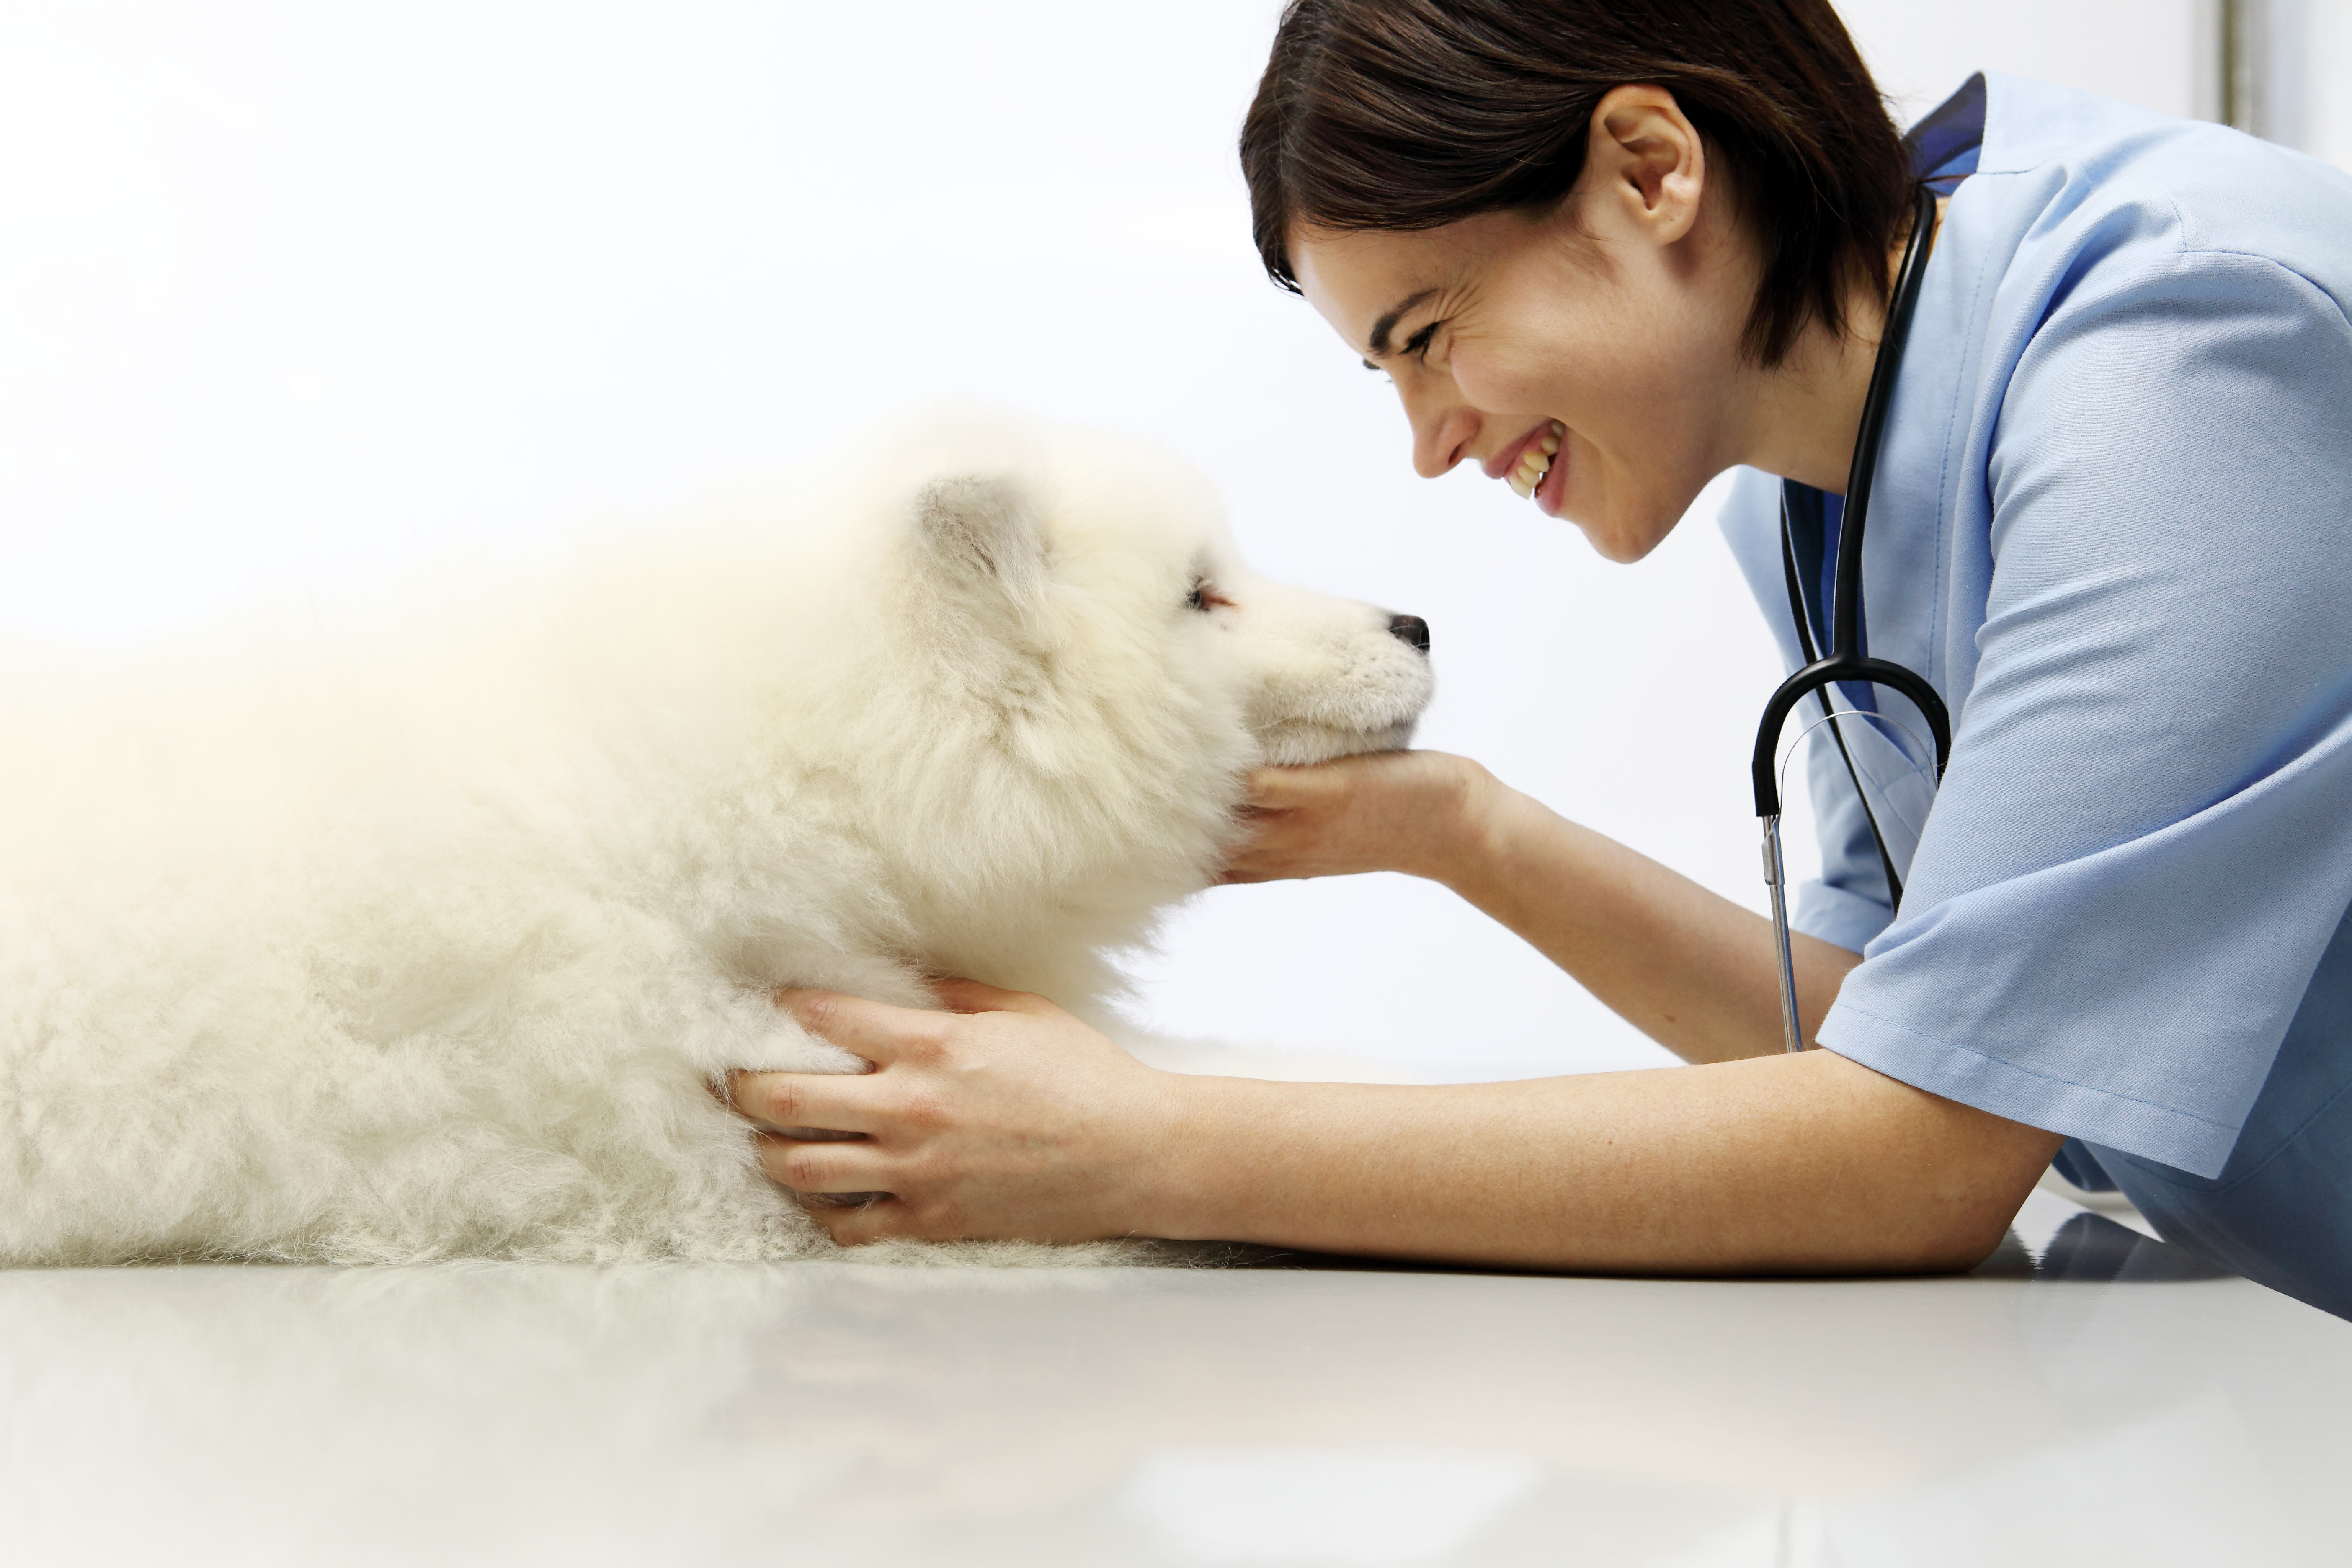 Ветеринар экзамены. Самоед у ветеринара. Собака улыбается у ветеринара. Самоеды маленькие у ветеринара. Собака самоед у ветеринара.